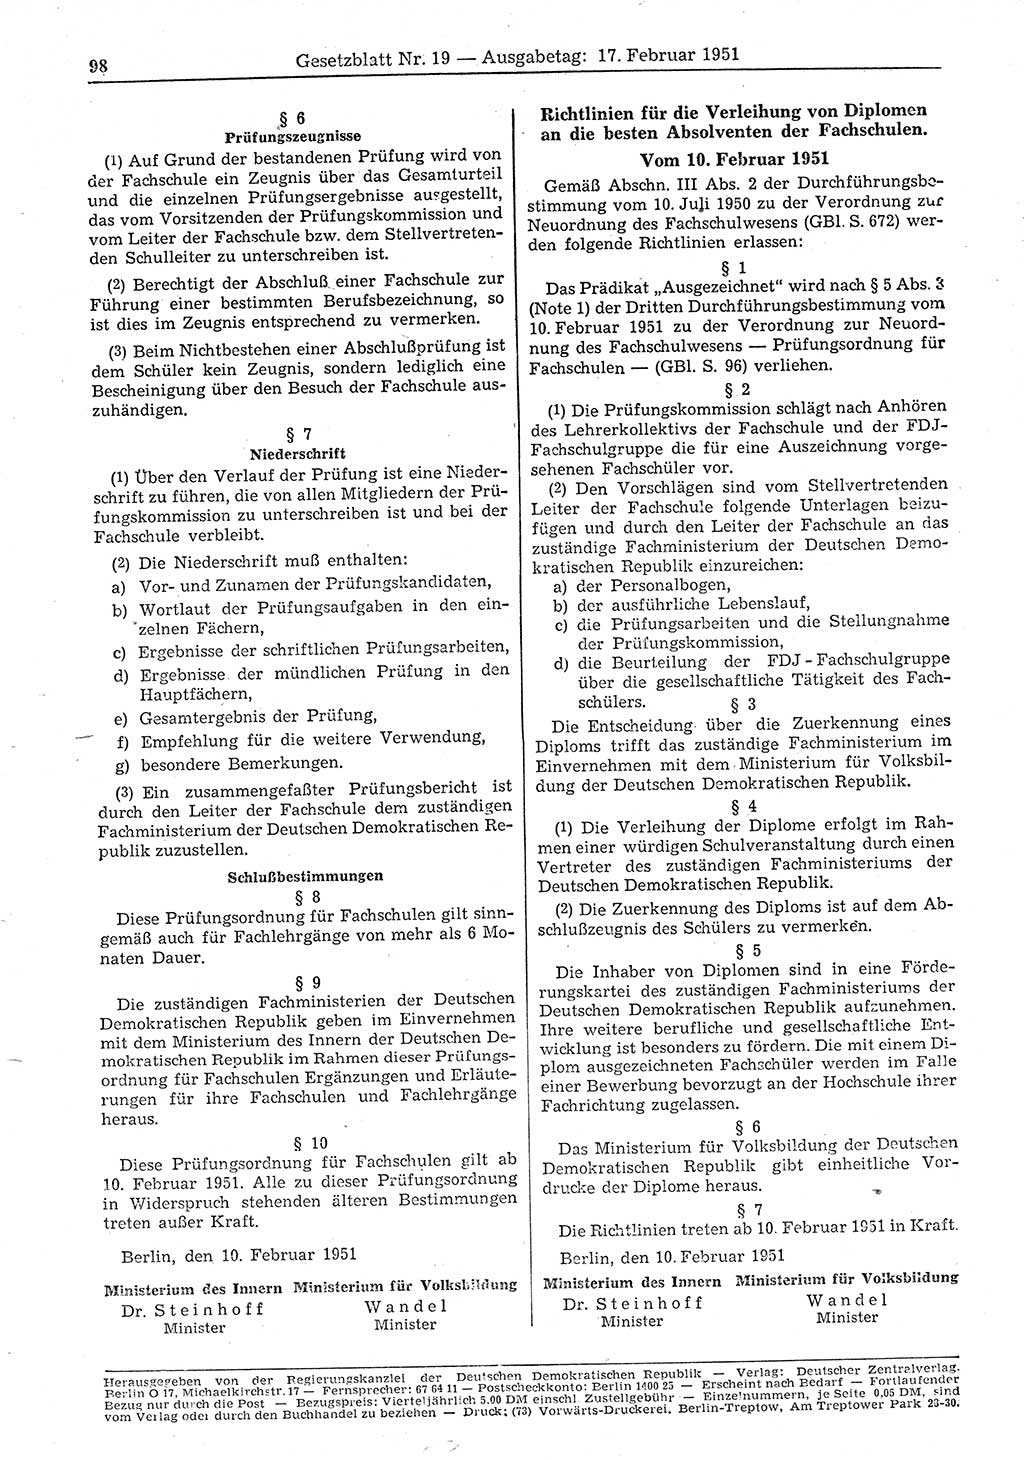 Gesetzblatt (GBl.) der Deutschen Demokratischen Republik (DDR) 1951, Seite 98 (GBl. DDR 1951, S. 98)